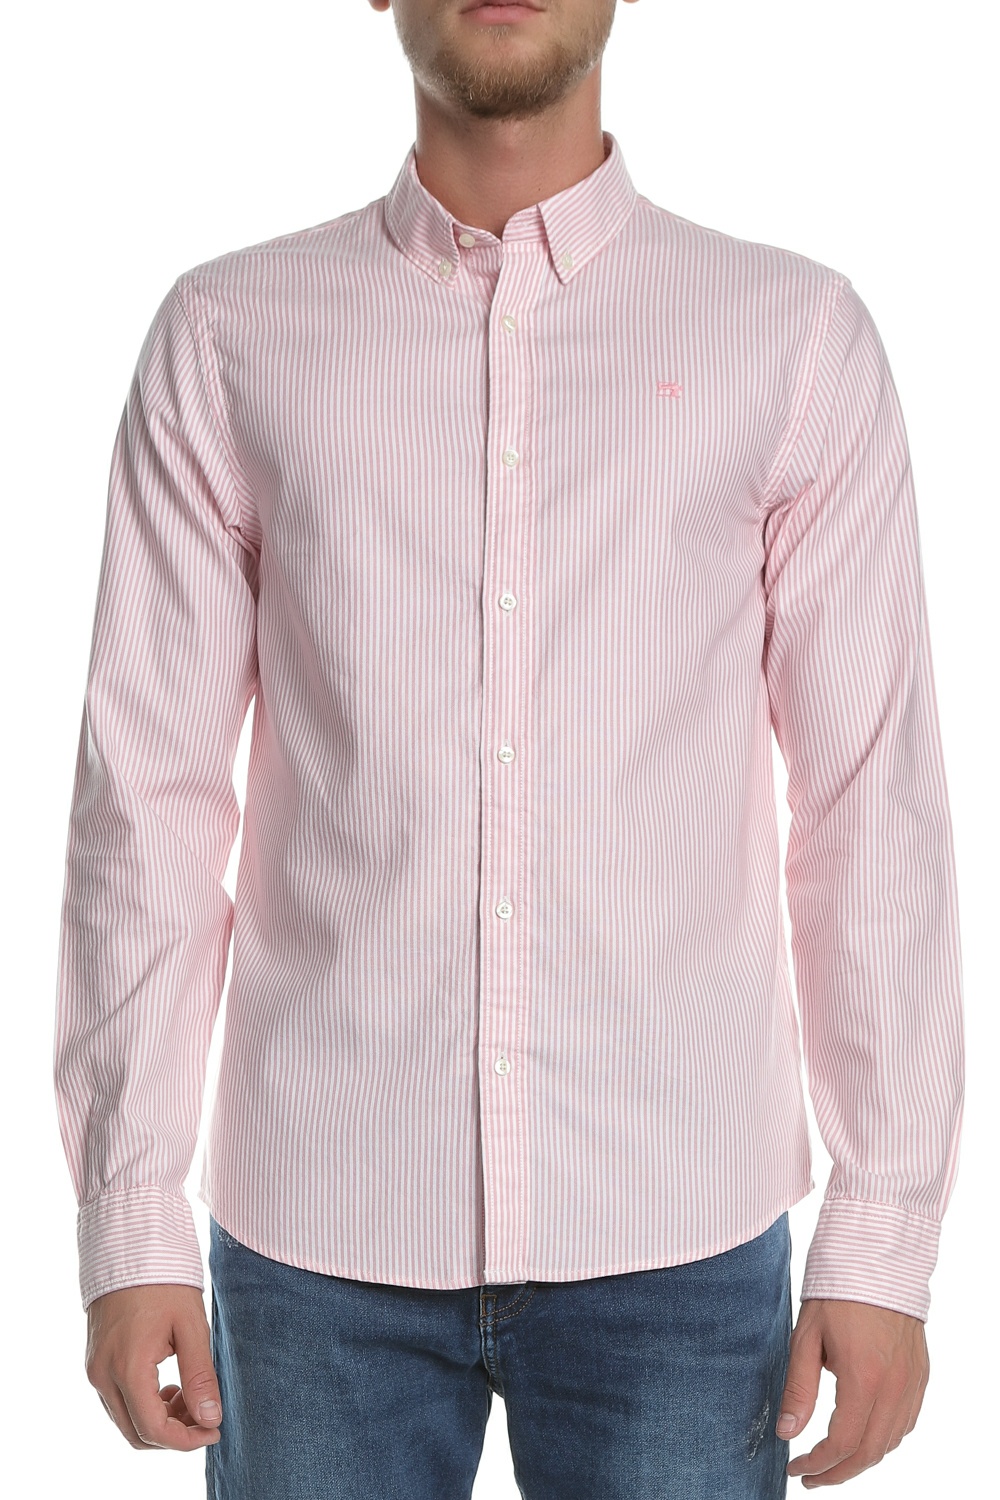 Ανδρικά/Ρούχα/Πουκάμισα/Μακρυμάνικα SCOTCH & SODA - Ανδρικό μακρυμάνικο πουκάμισο SCOTCH & SODA ροζ